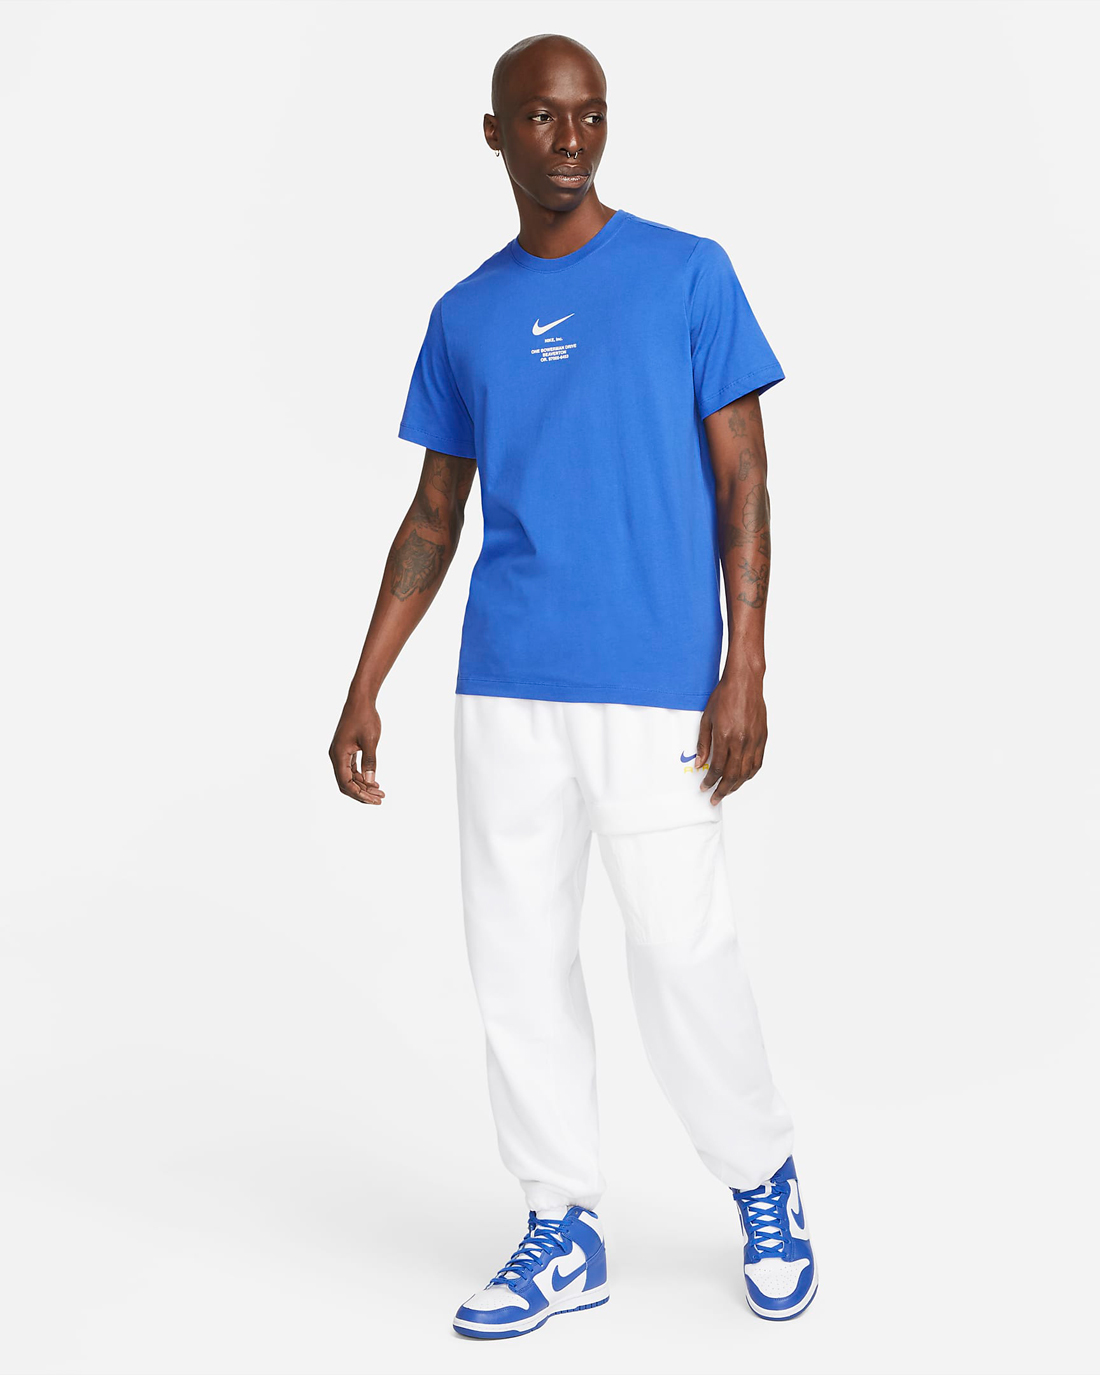 Nike-Sportswear-Game-Royal-Clothing